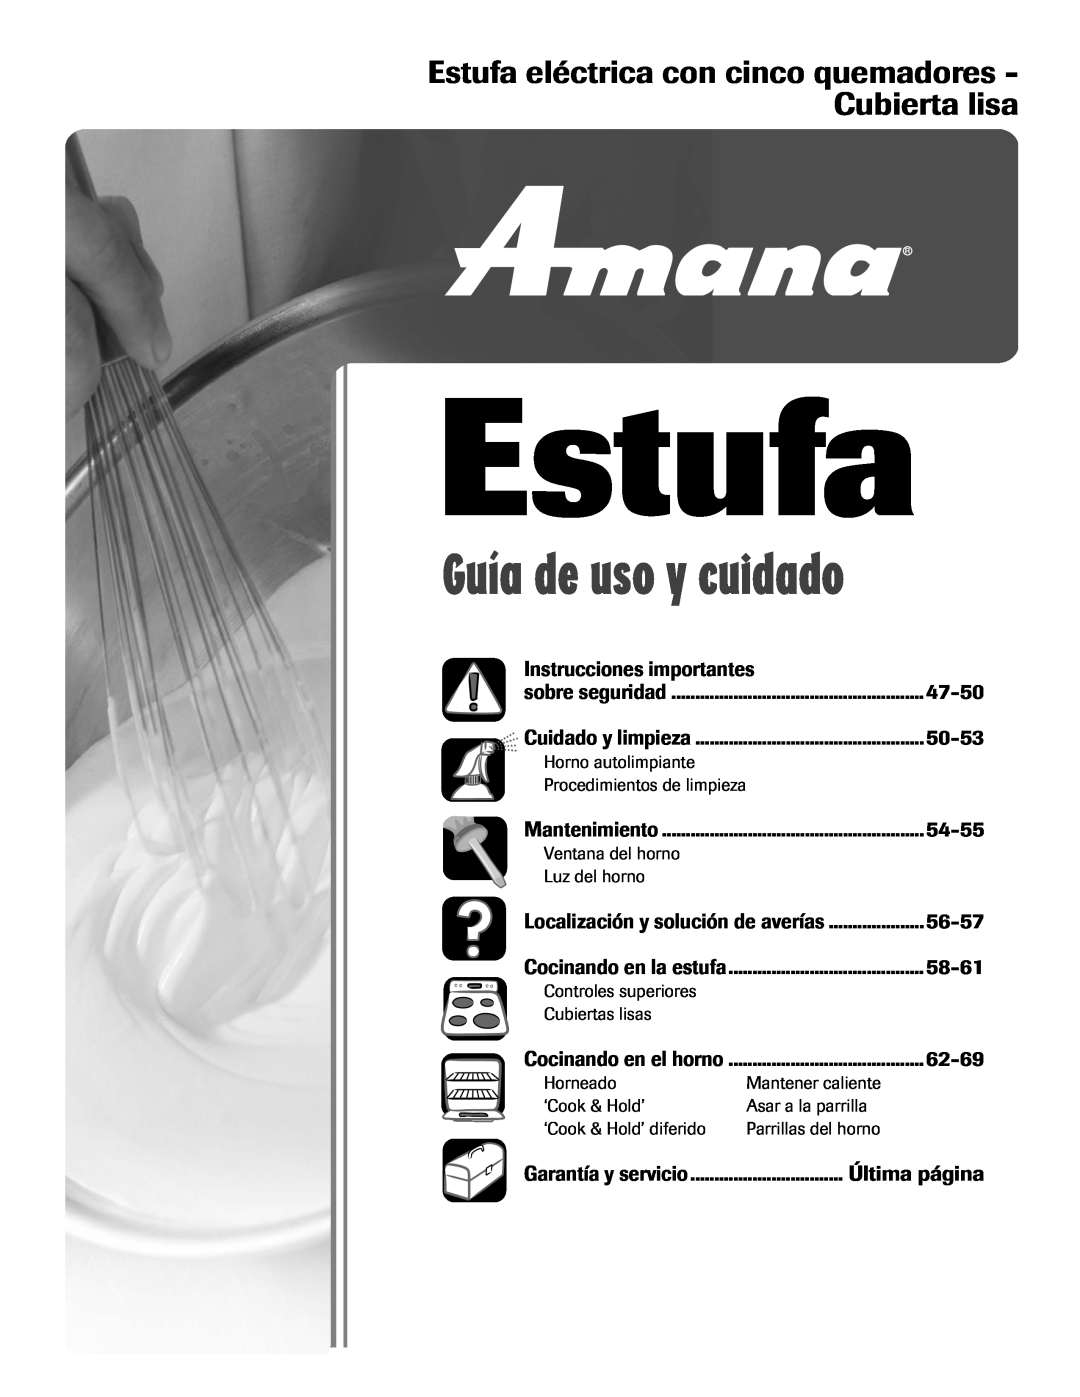 Amana AER5722CAS Estufa eléctrica con cinco quemadores - Cubierta lisa, Instrucciones importantes, 47-50, 50-53, 54-55 